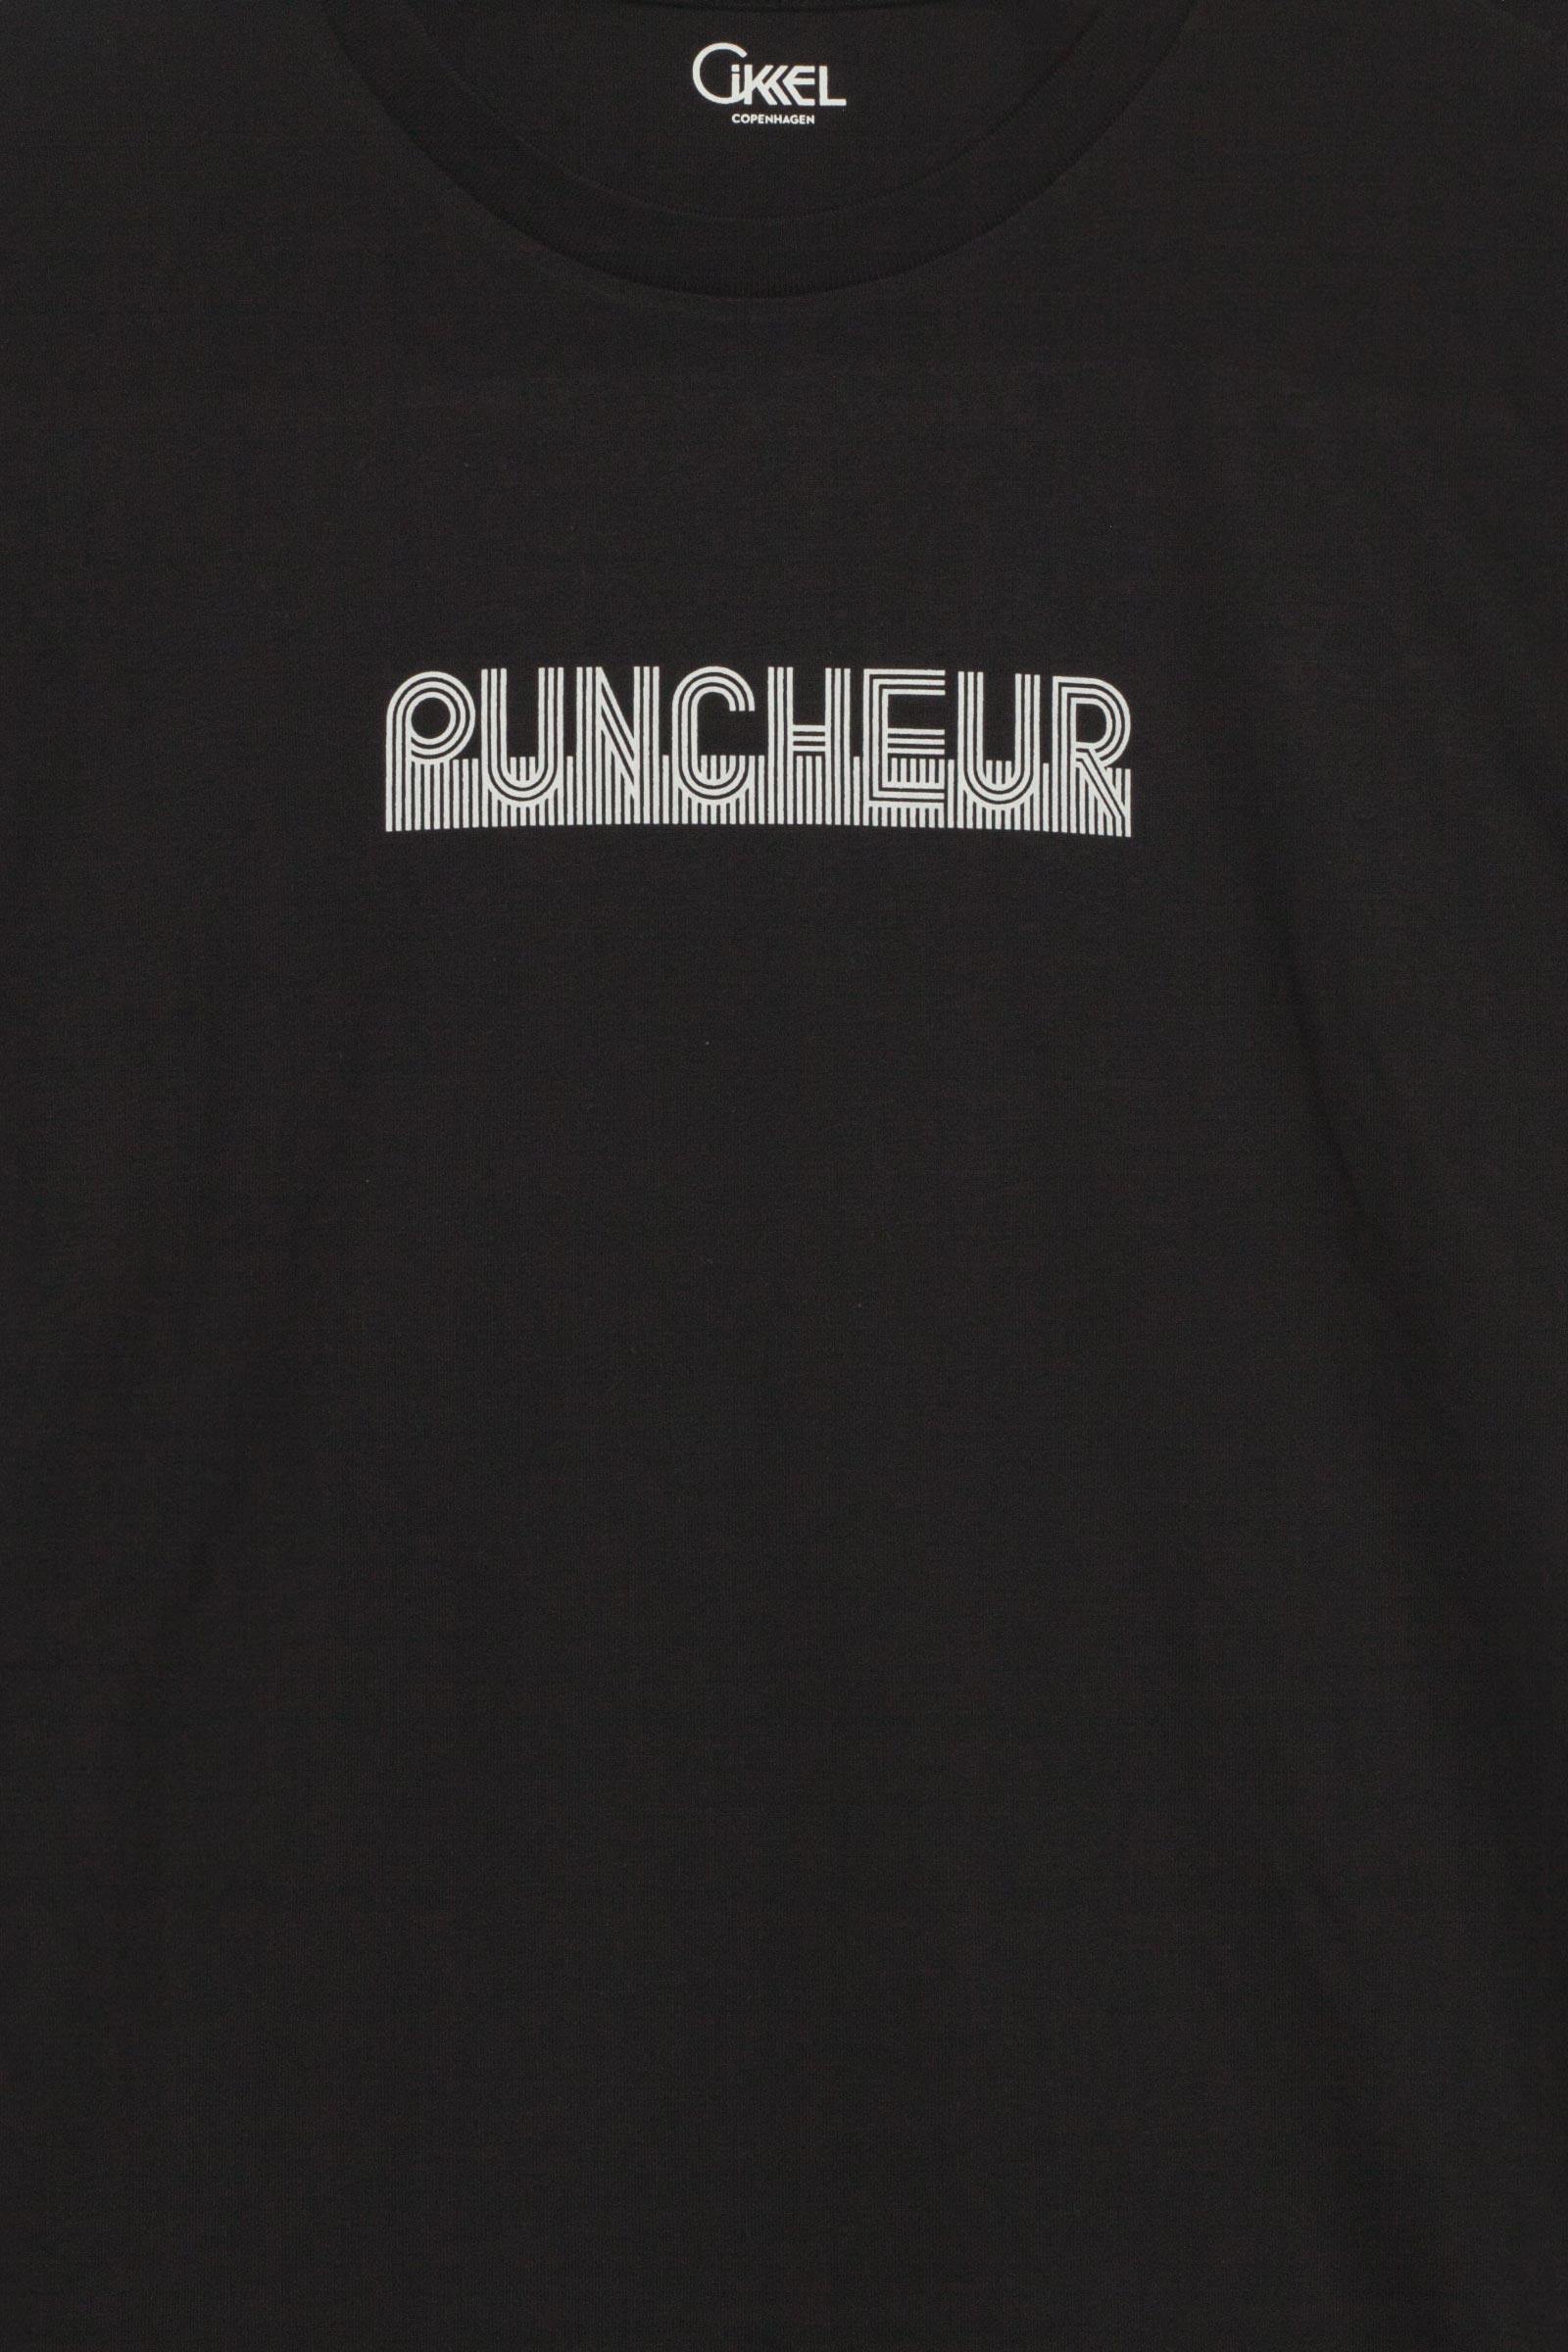 Puncheur - Cikkel